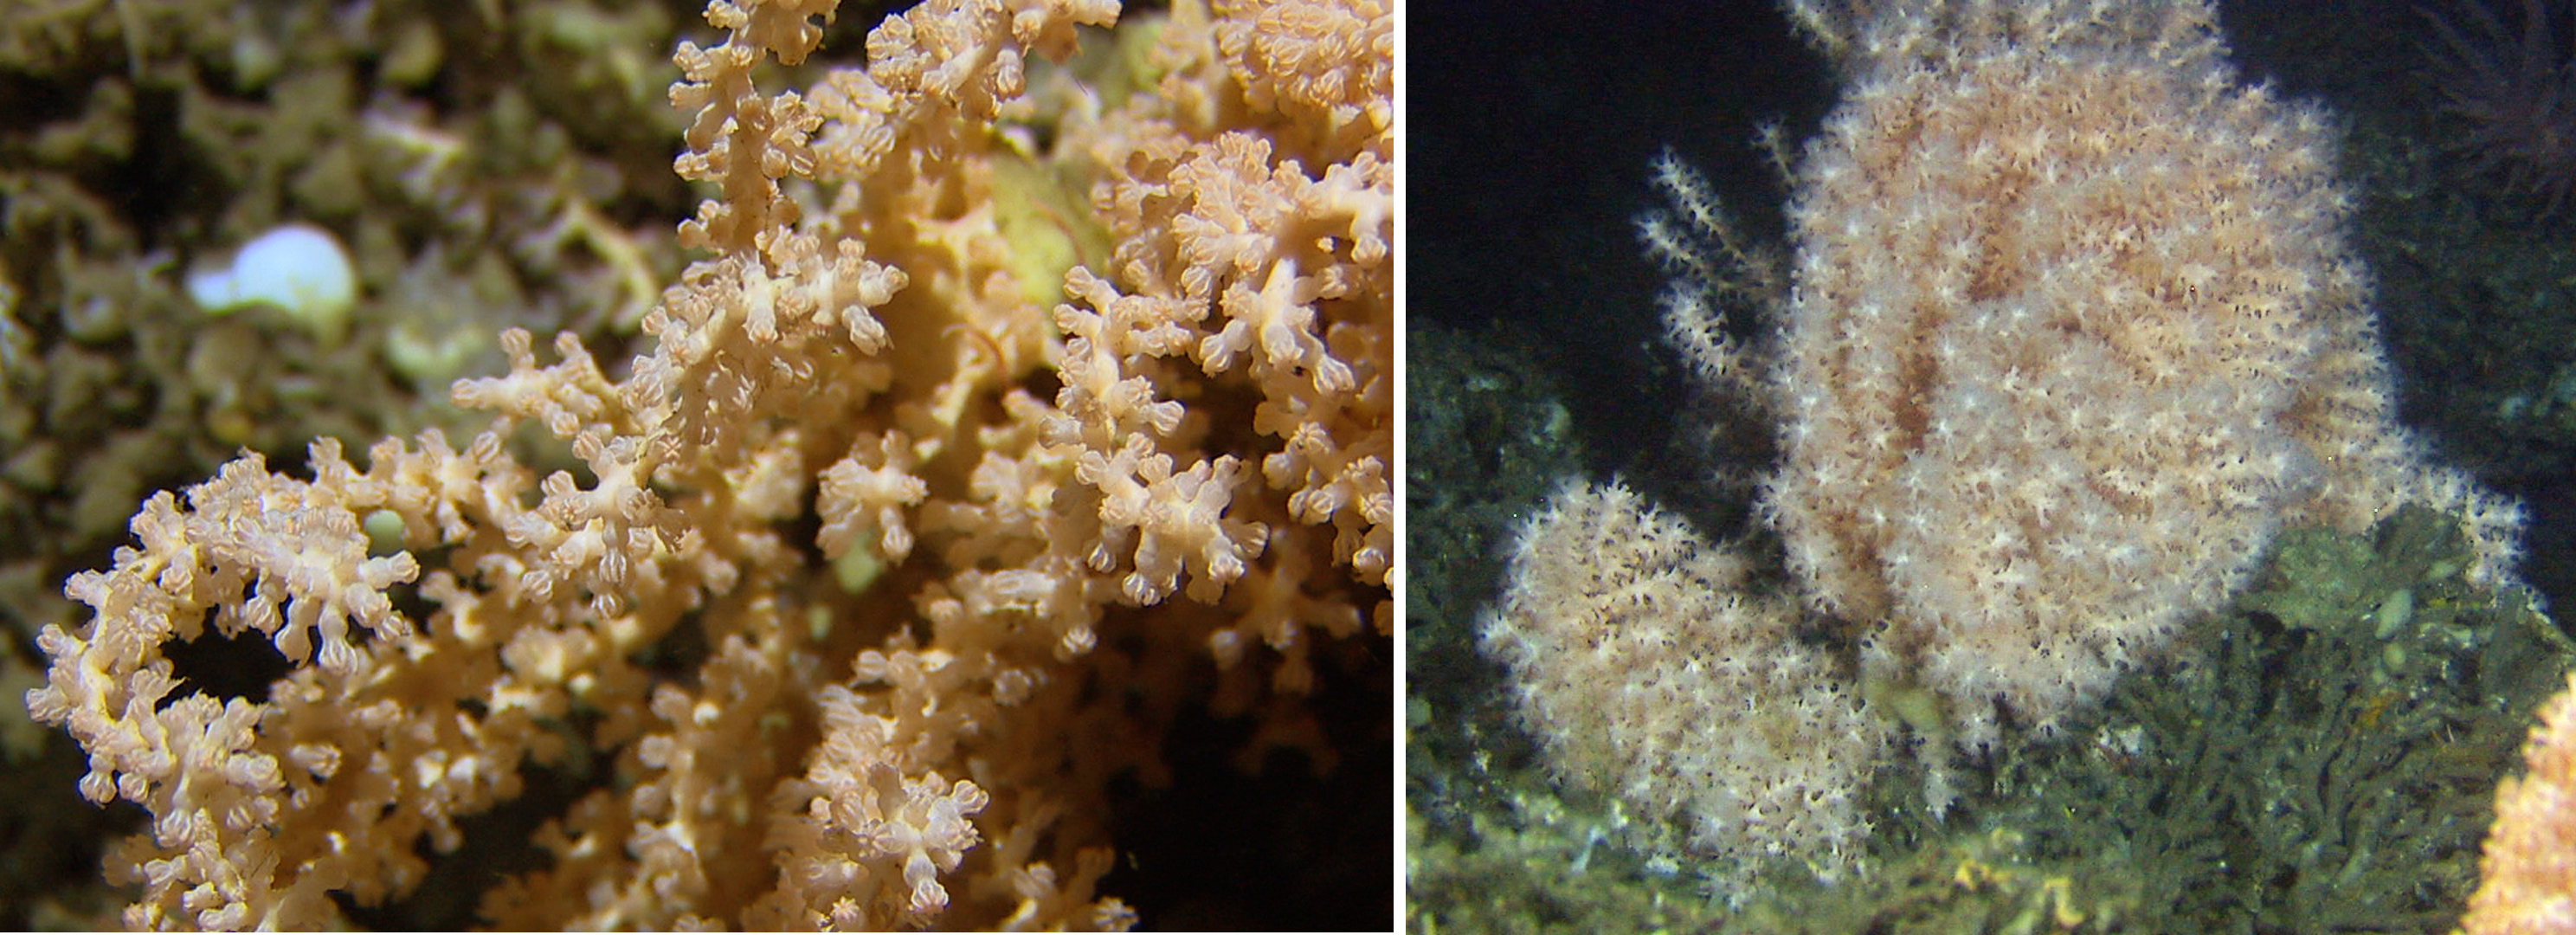 Bildet viser sikksakk korall